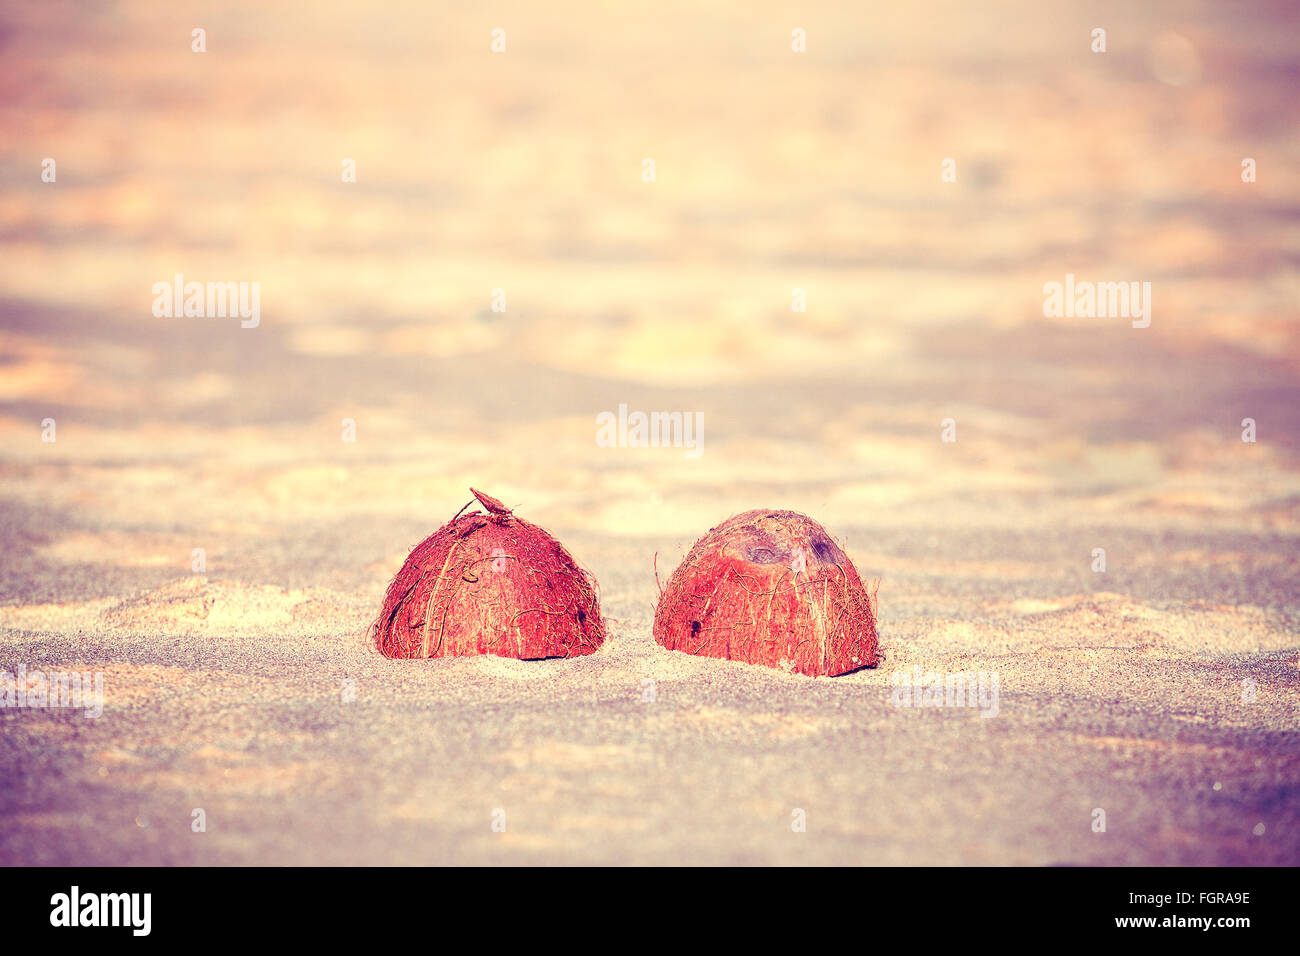 Tons Vintage les moitiés de noix de coco sur une plage, peu de profondeur de champ. Banque D'Images